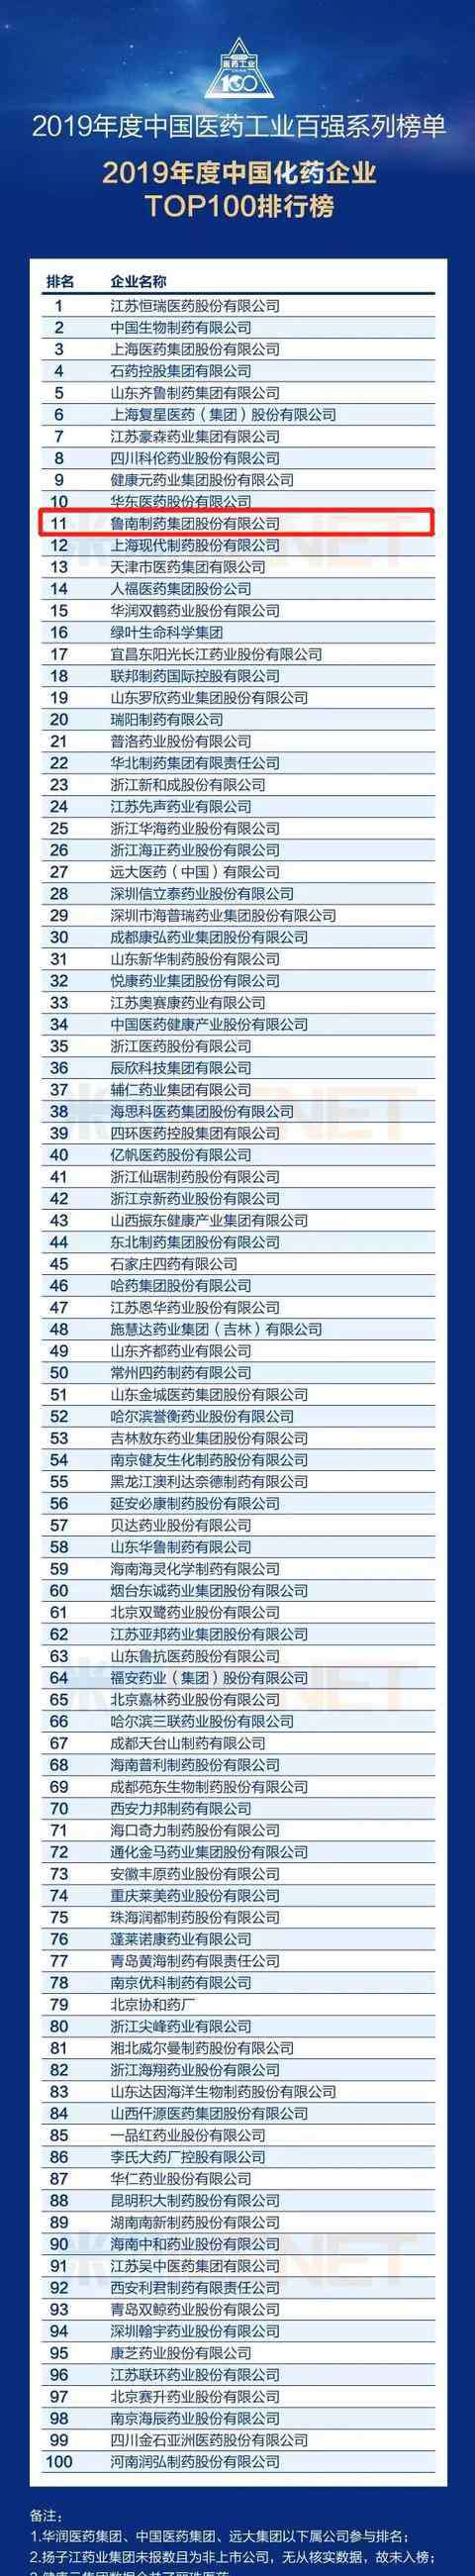 中国制药企业排名 稳步前进！鲁南制药荣登2019年度中国医药百强（化药企业）榜第11位